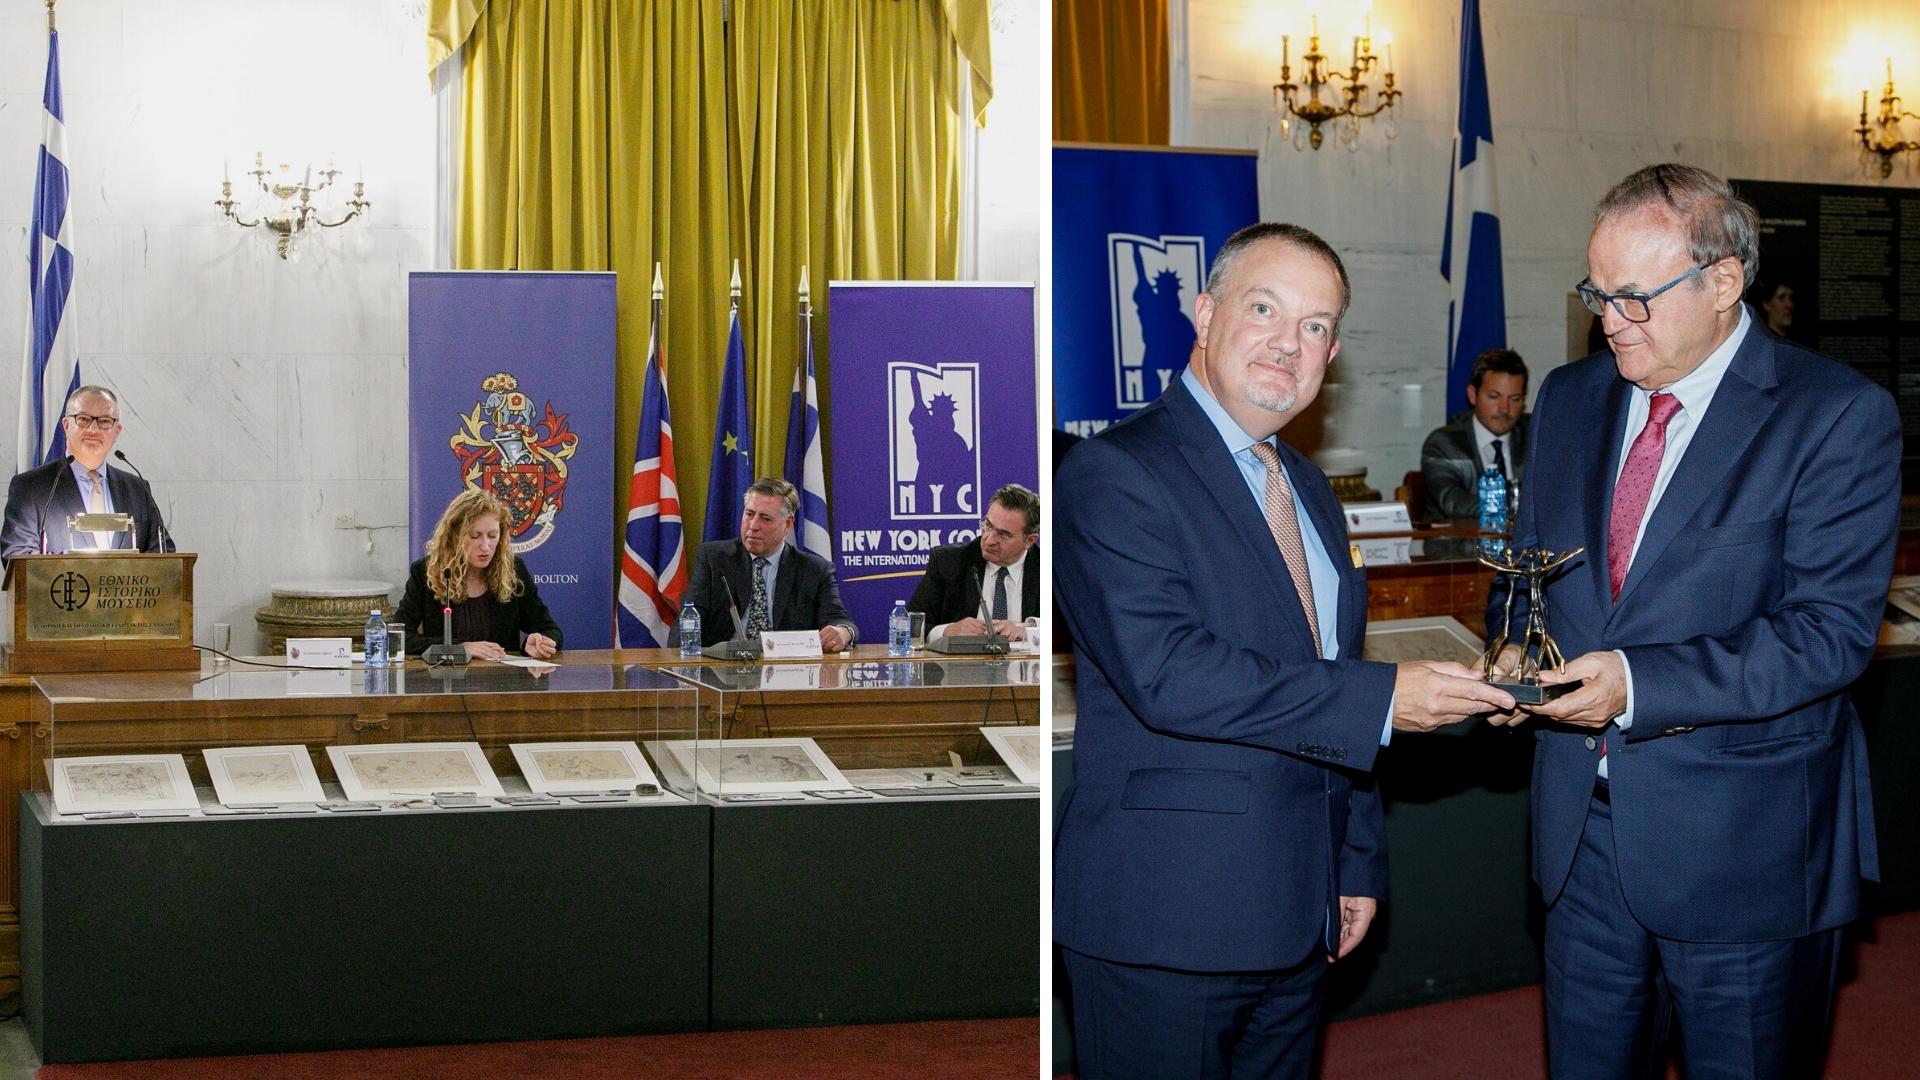 Φώτο άνω: O Βρετανός Πρέσβης στην Ελλάδα, Matthew Lodge κατά τη διάρκεια της ομιλίας του παρέλαβε από τον Πρόεδρο και Ιδρυτή του Εκπαιδευτικού Ομίλου New York College, κ. Ηλία Φούτση το “British-Greek Friendship & Education Award”.